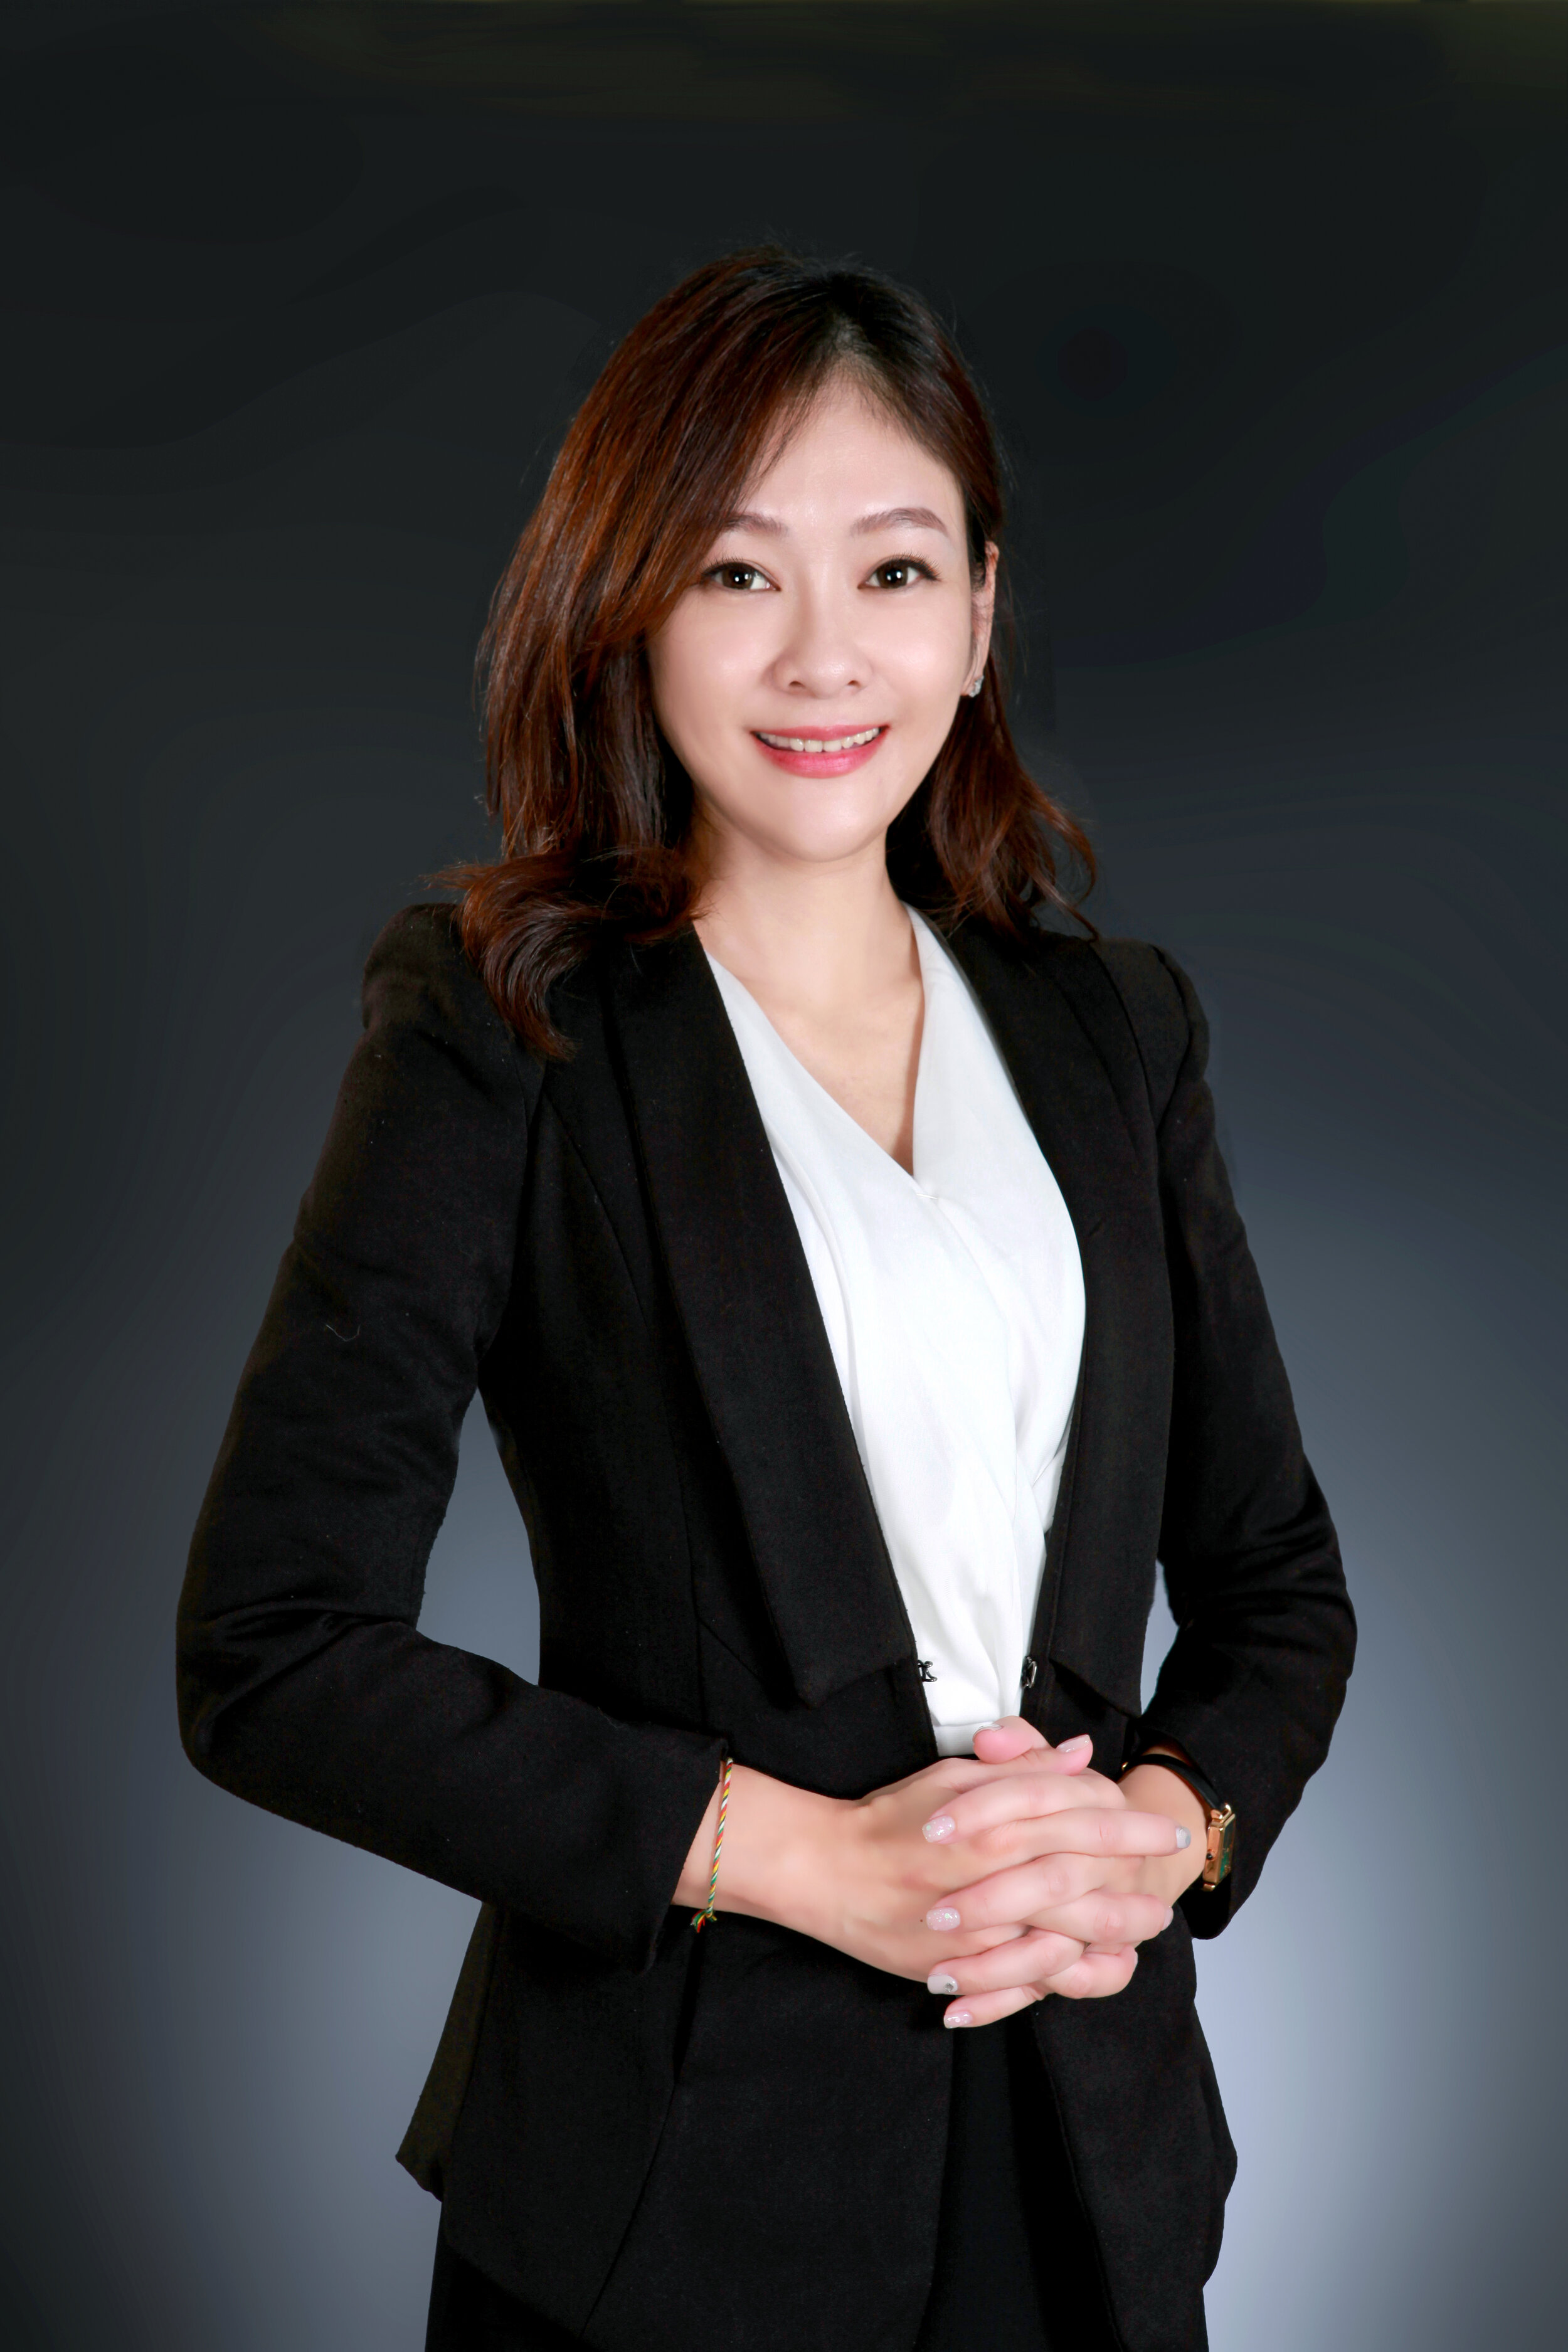 Megan Chen